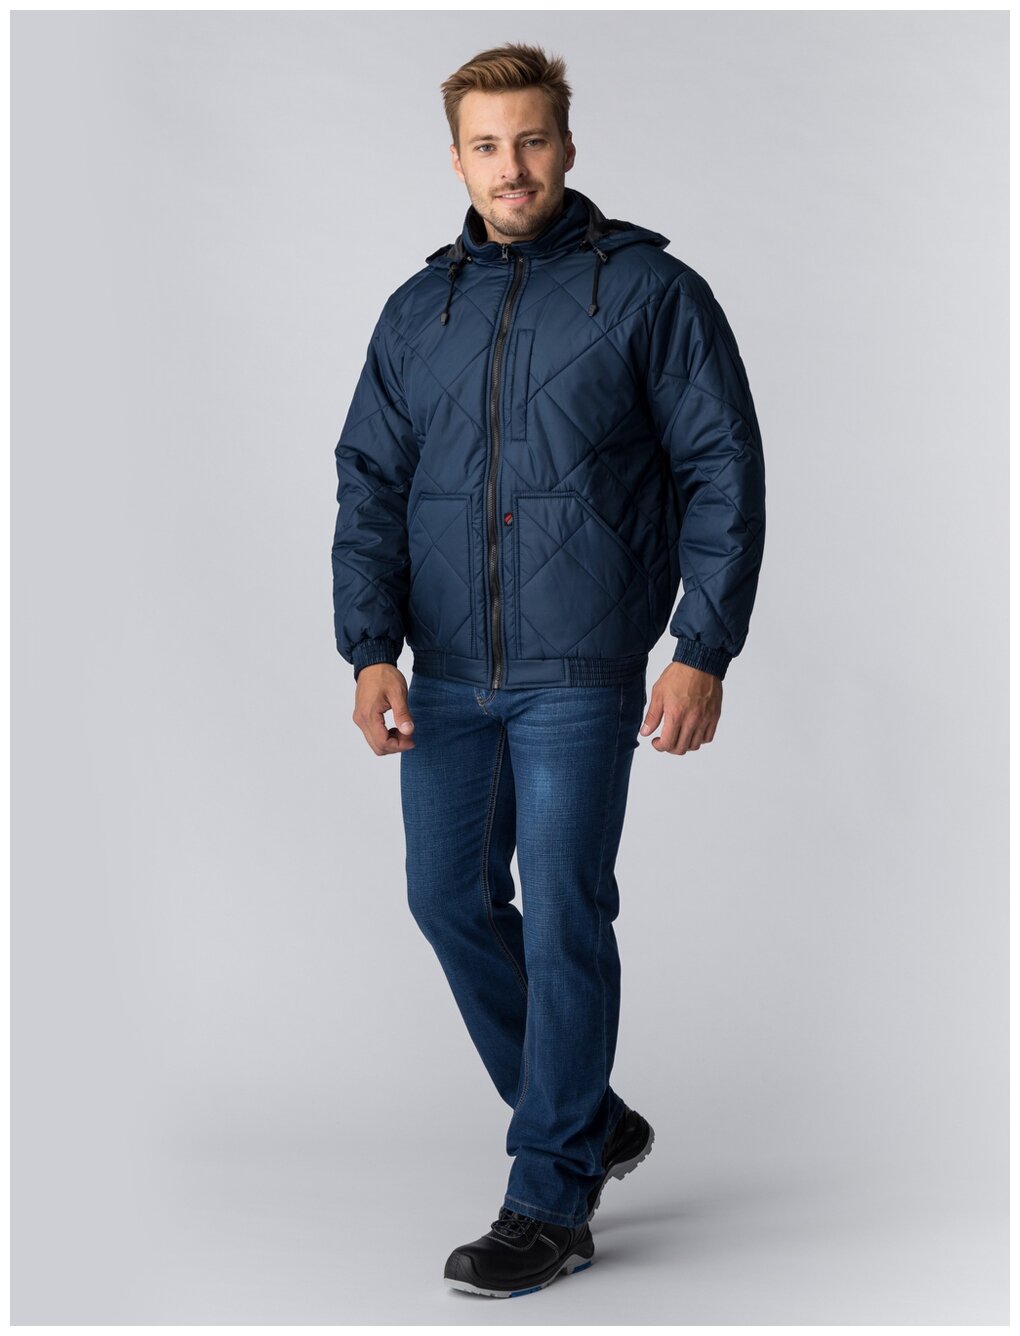 Куртка демисезонная Бомбер-Люкс (тк.Дюспо), т.синий (60-62; 182-188) — купить по выгодной цене на Яндекс.Маркете